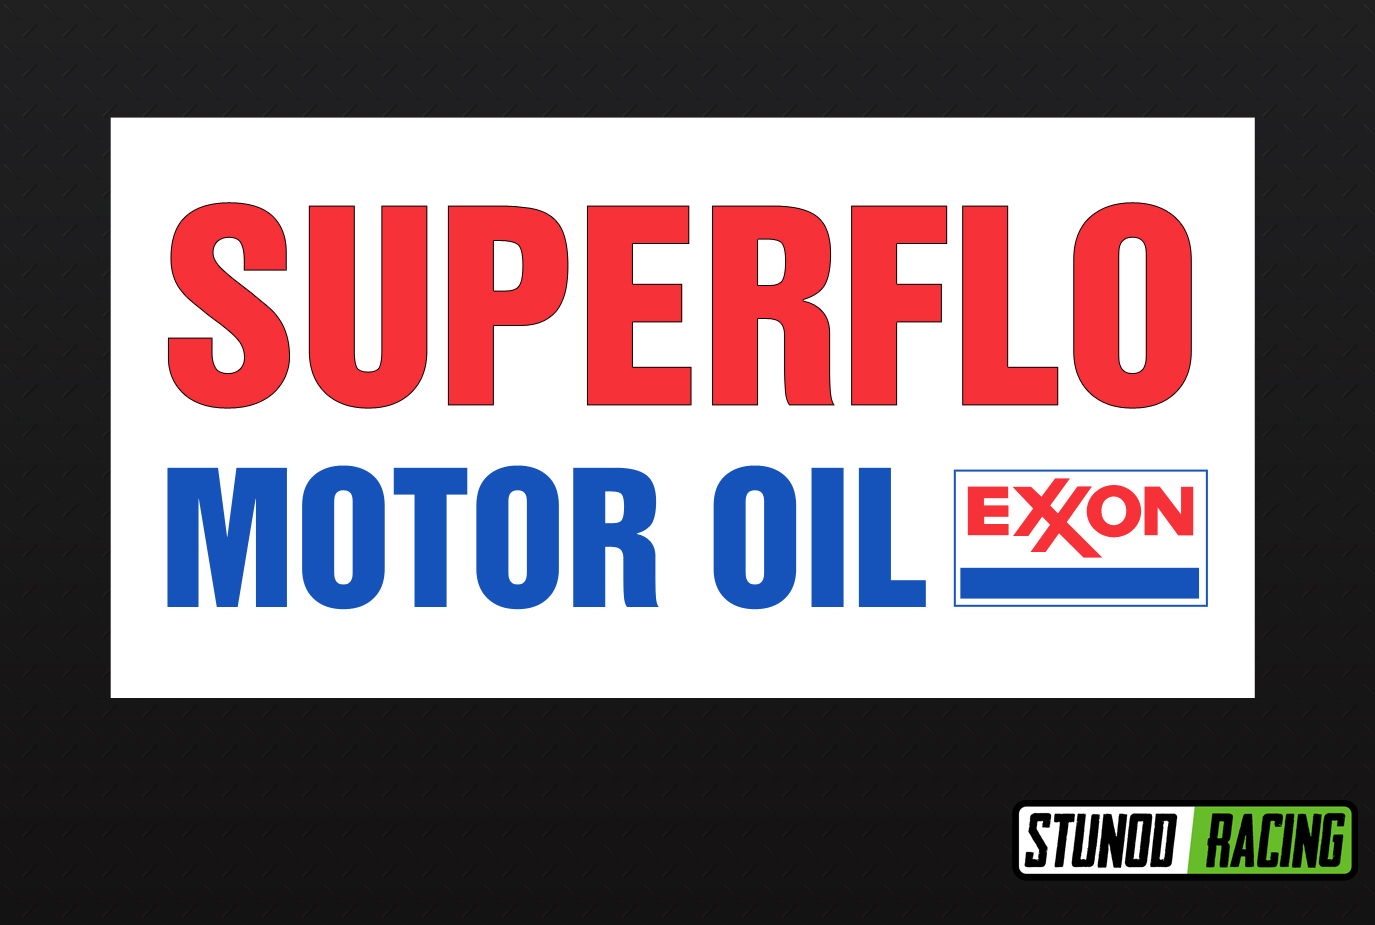 Superflo Motor Oils Exxon White Vinyl Decal  9.5" x 19" *Gas & Oil